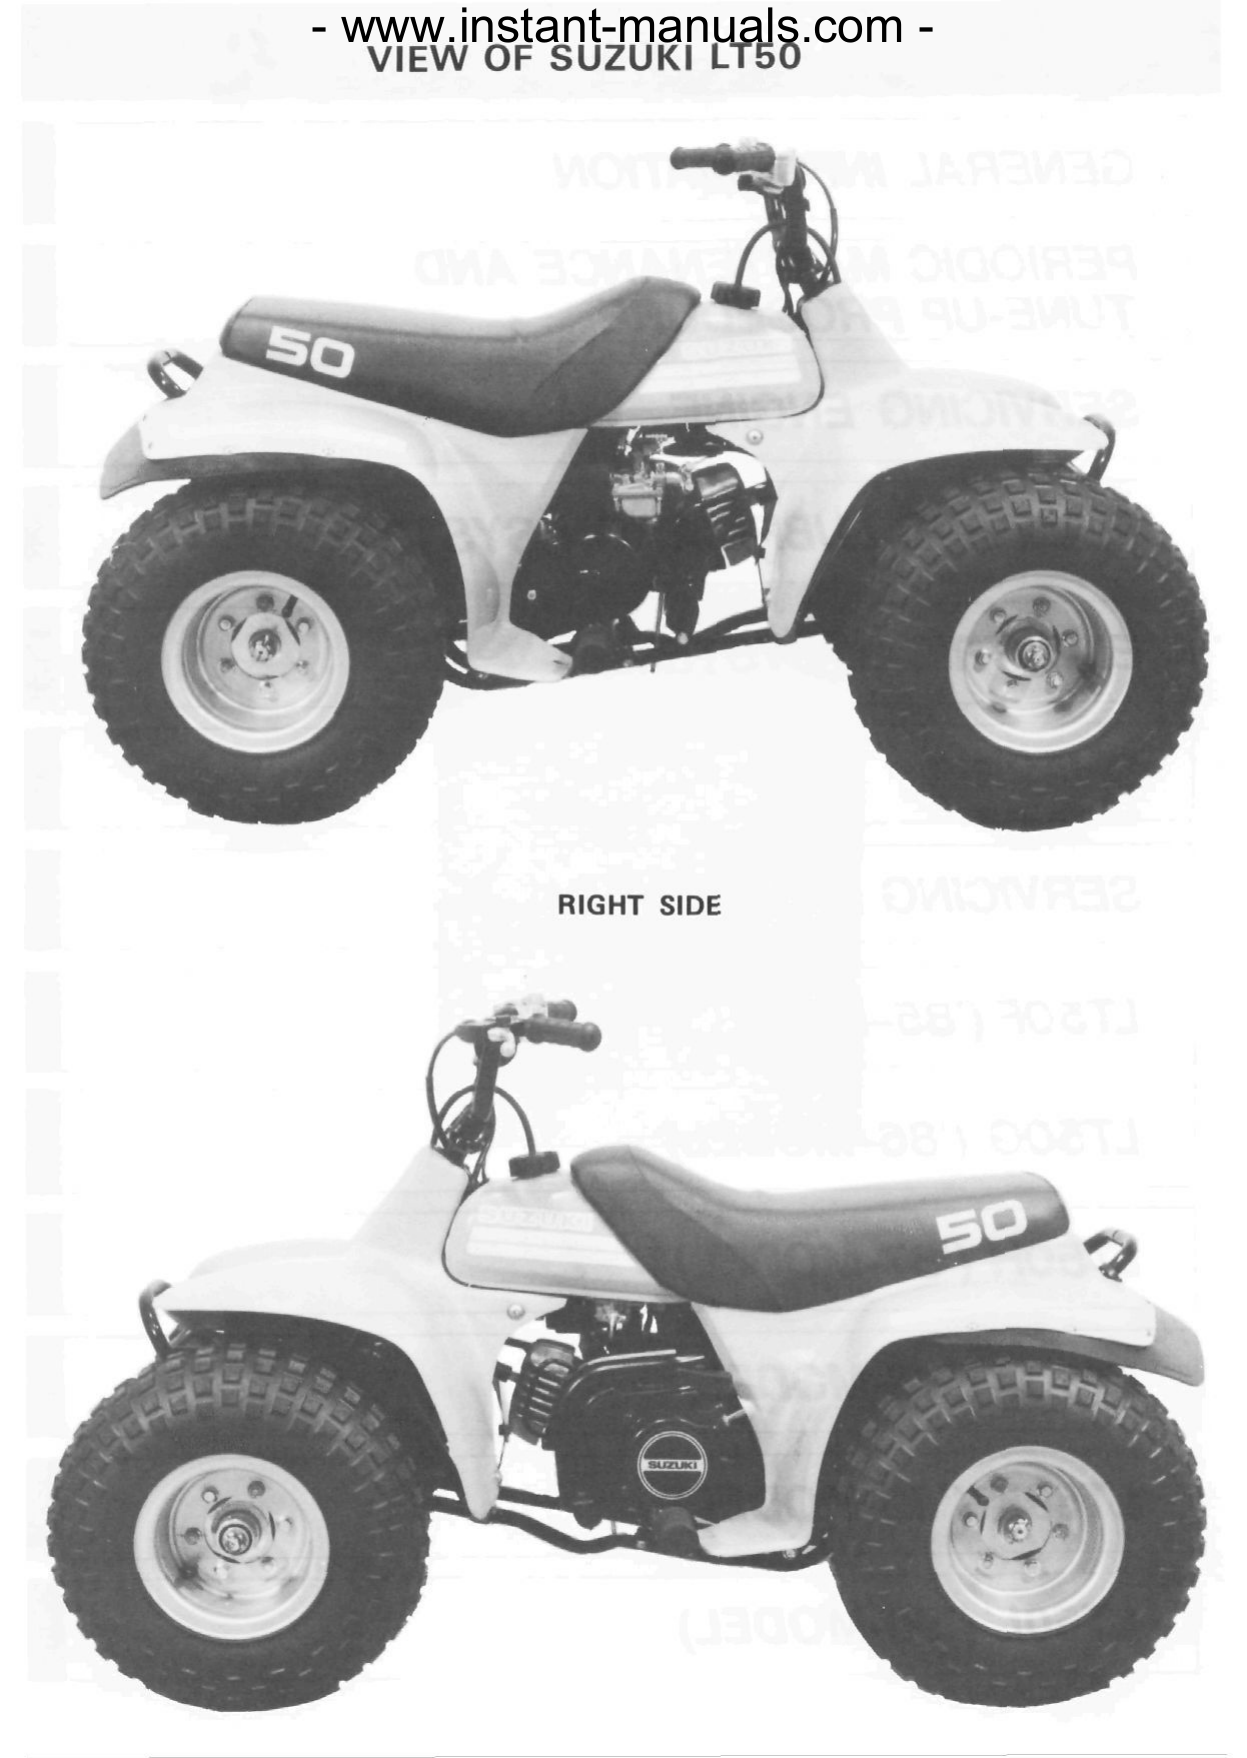 1984-1990 Suzuki LT50 ATV repair and service manual Preview image 2